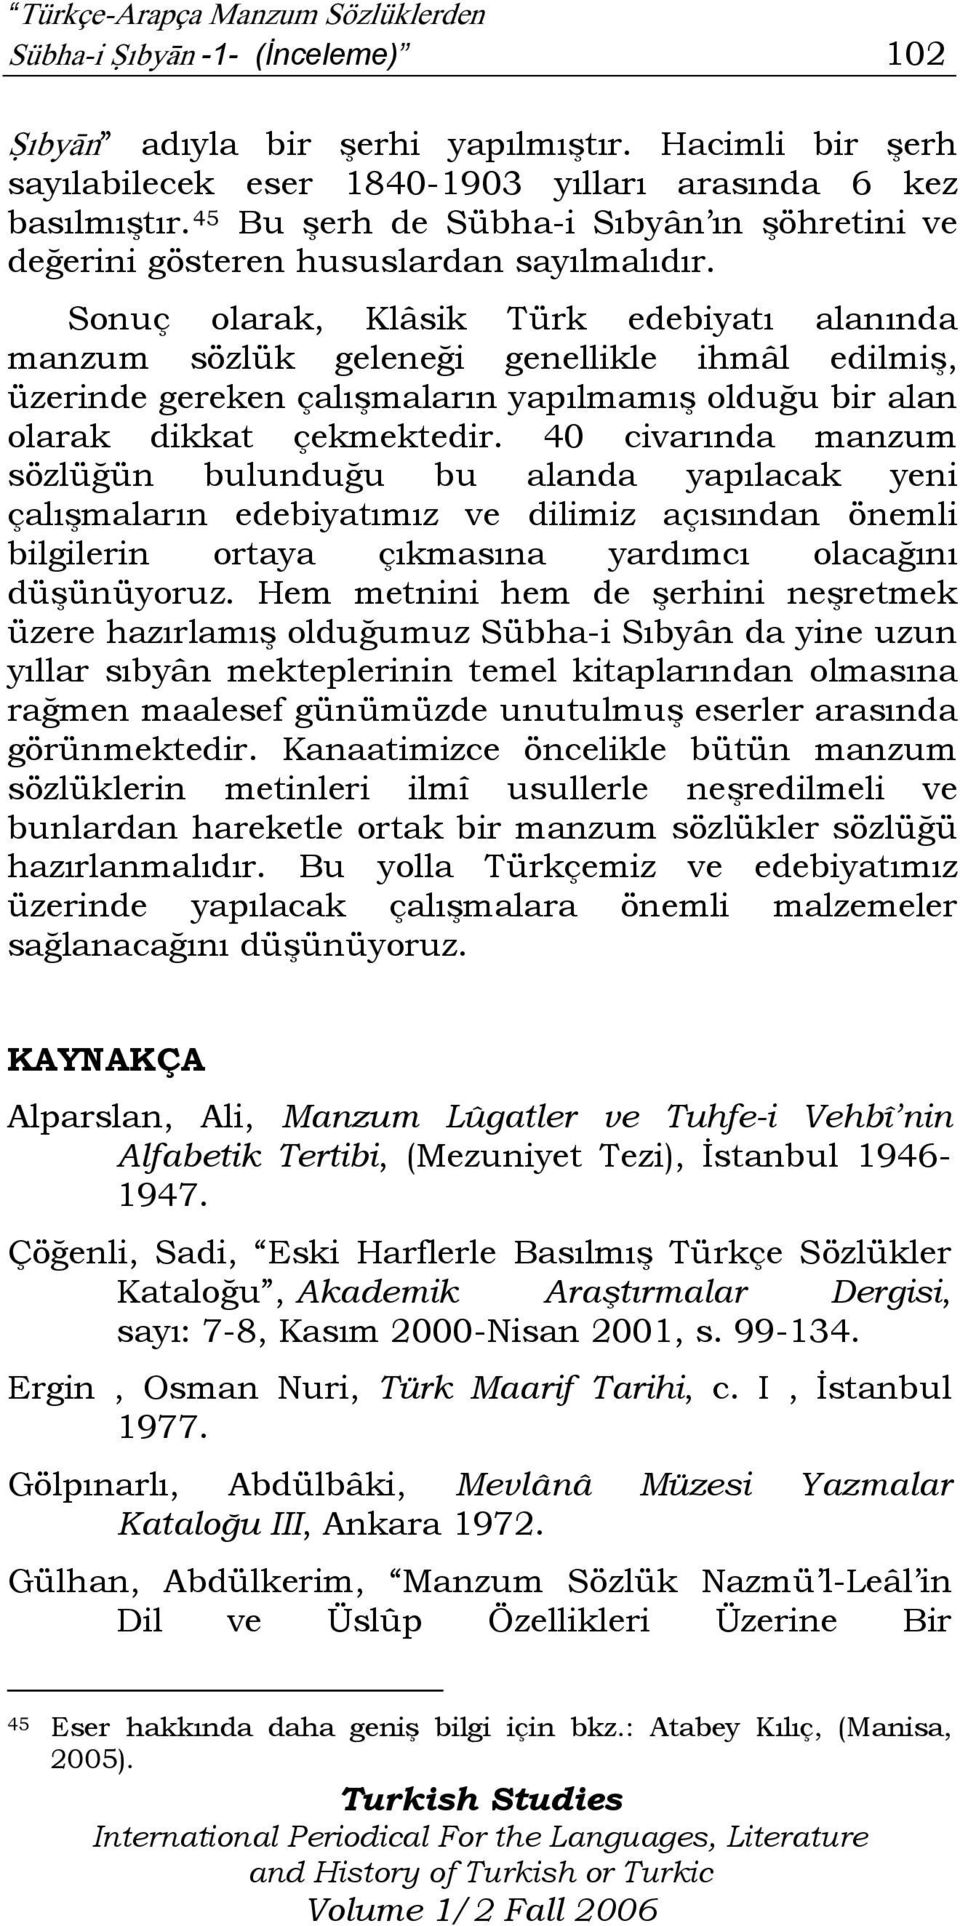 Sonuç olarak, Klâsik Türk edebiyatı alanında manzum sözlük geleneği genellikle ihmâl edilmiş, üzerinde gereken çalışmaların yapılmamış olduğu bir alan olarak dikkat çekmektedir.